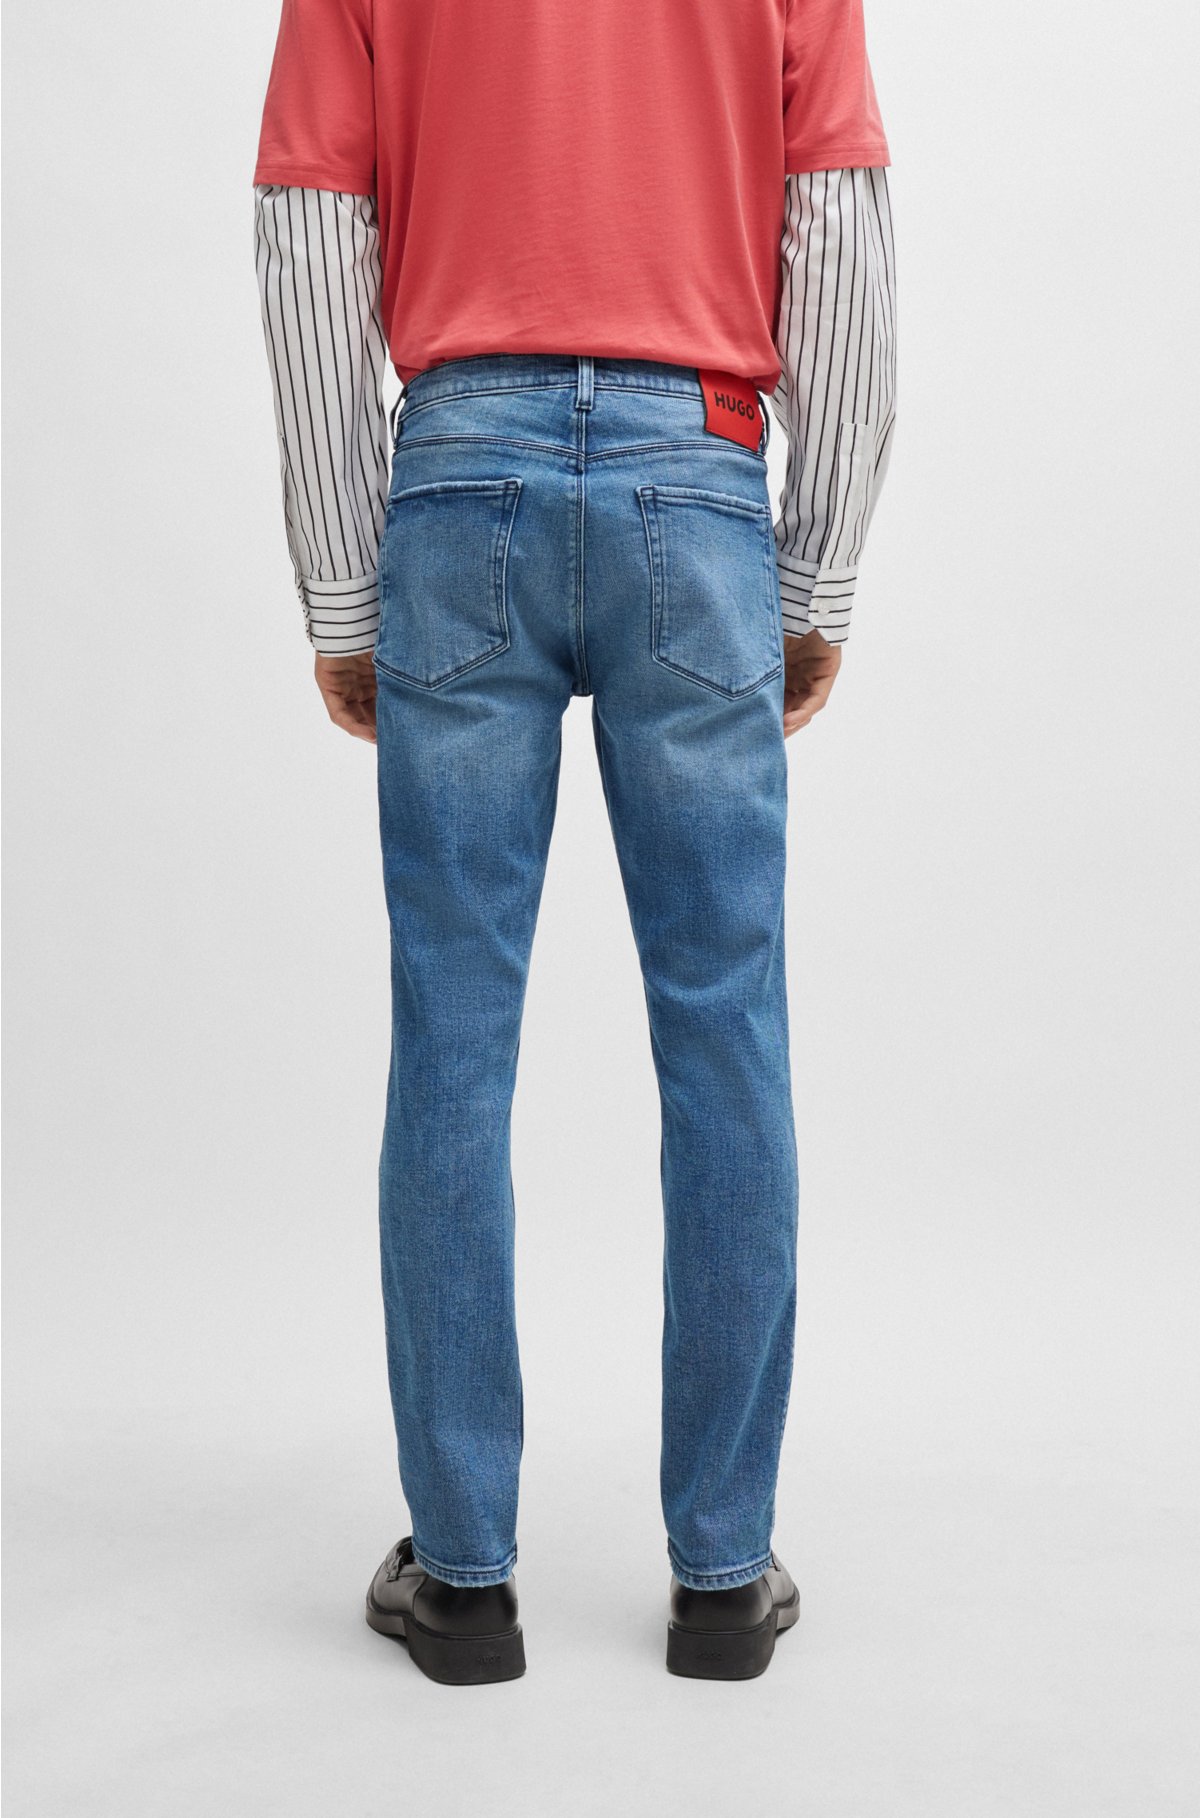 Extra-slim-fit jeans in blue stretch denim, Blue